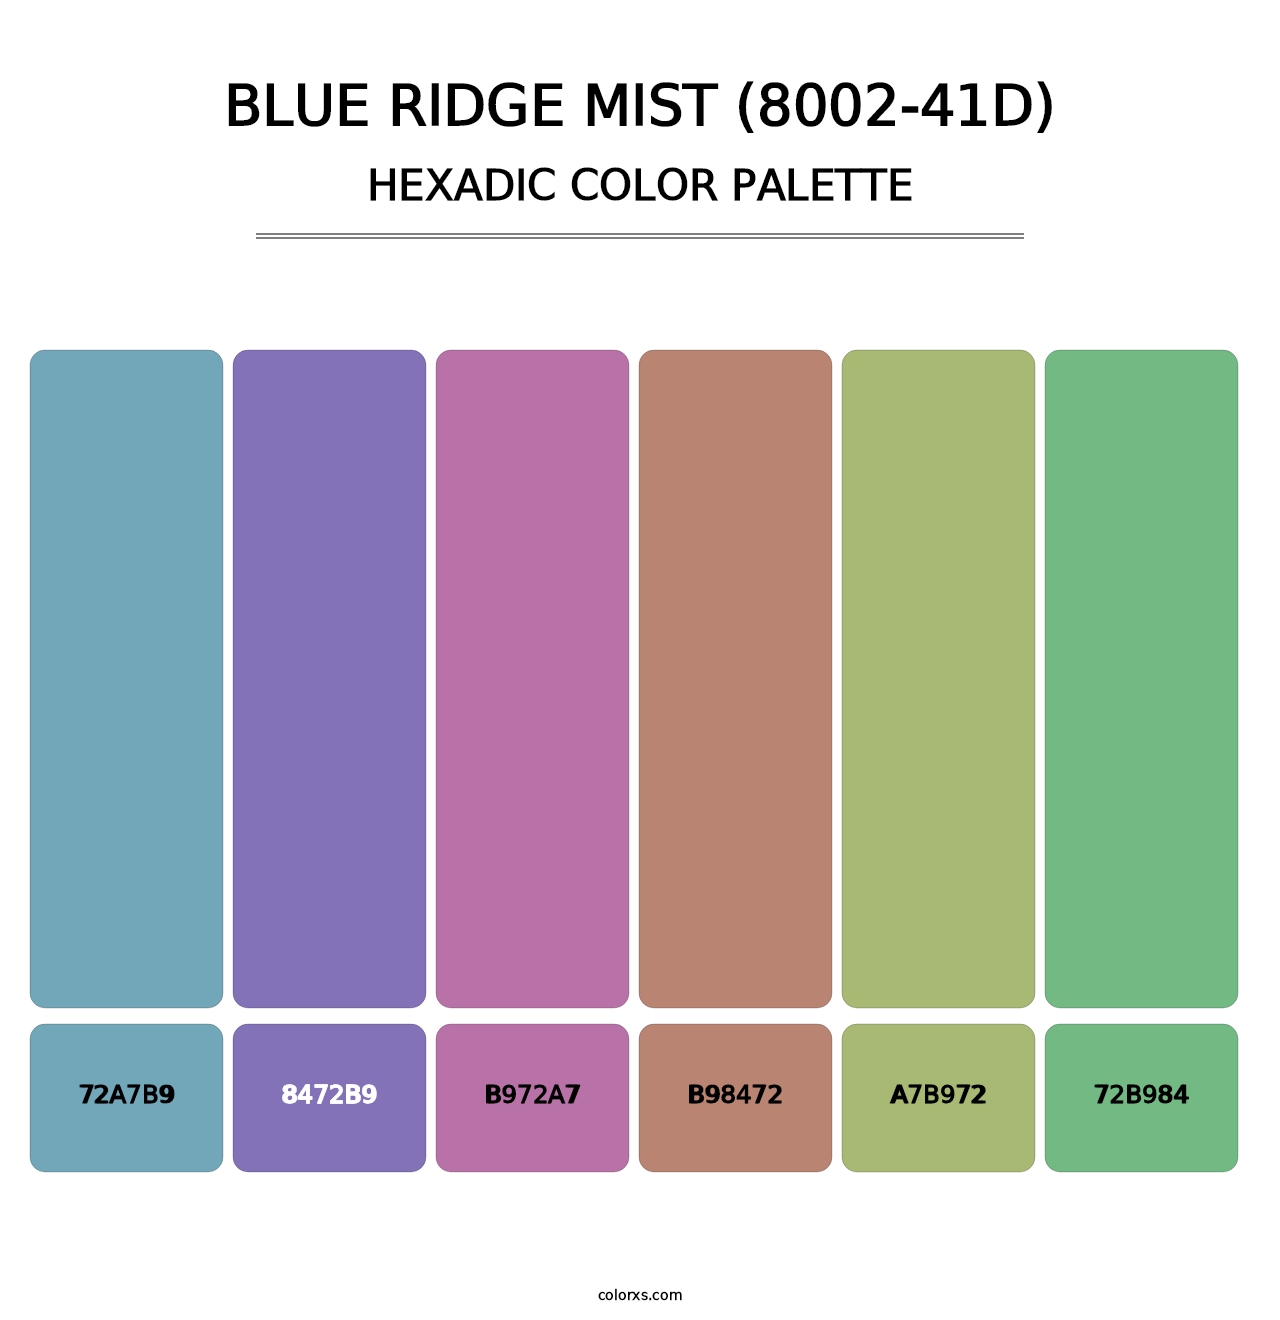 Blue Ridge Mist (8002-41D) - Hexadic Color Palette